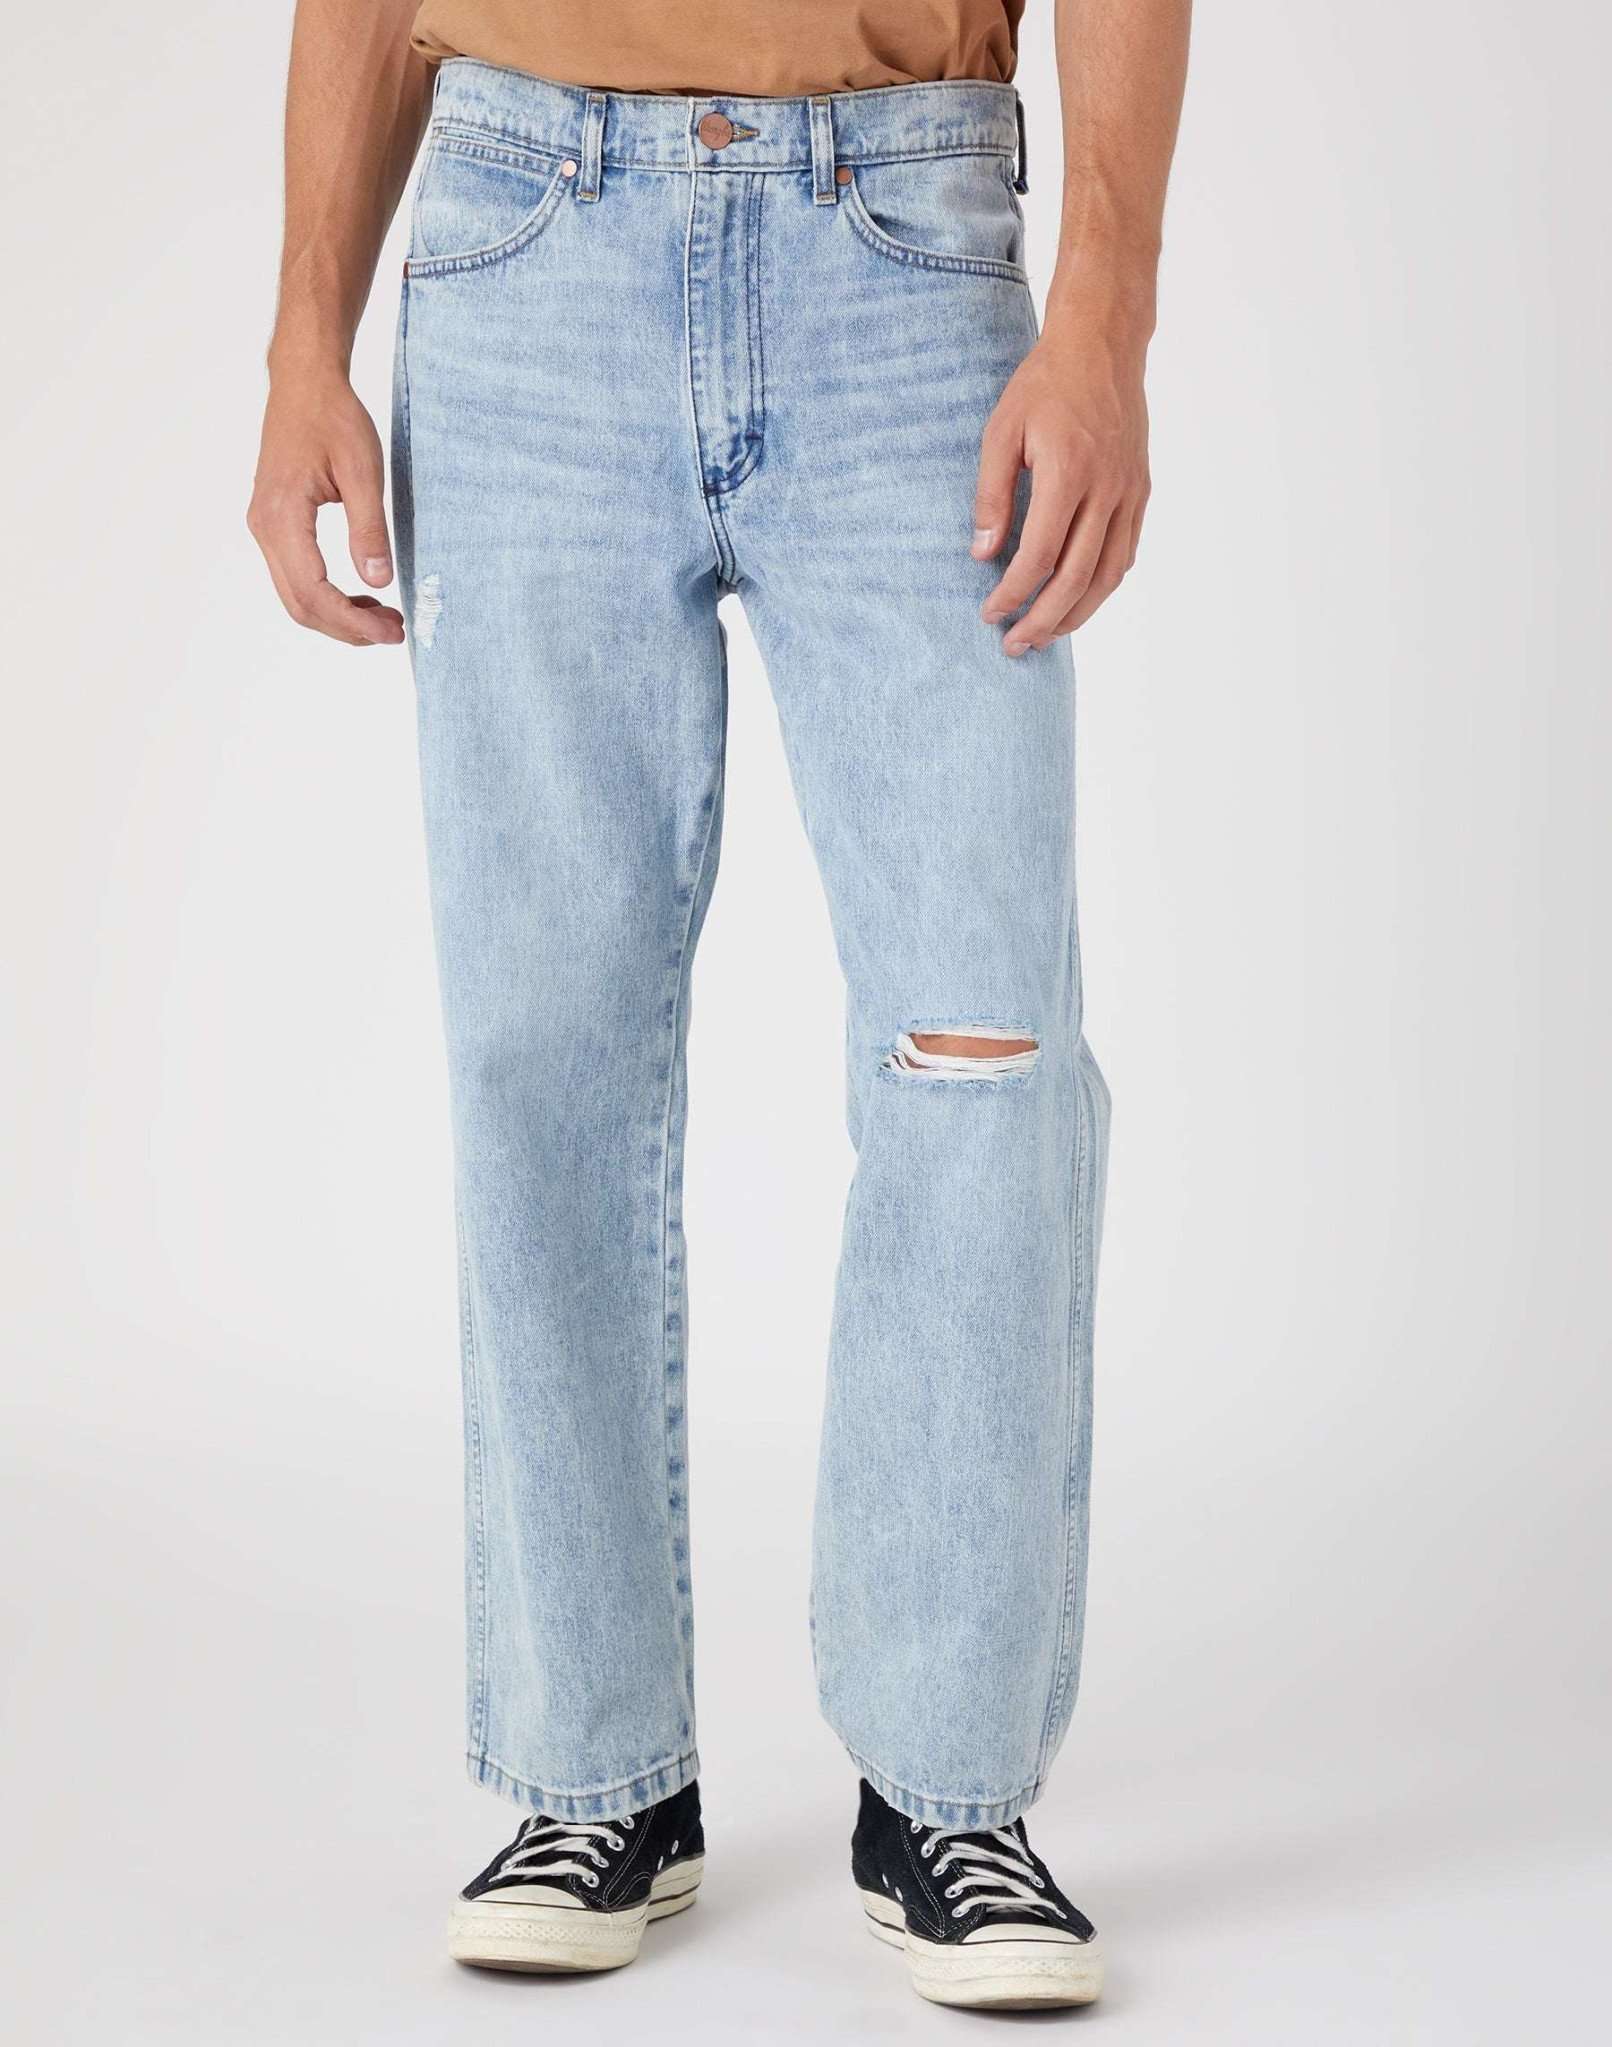 Redding in Ripped Light Wash Jeans Wrangler   